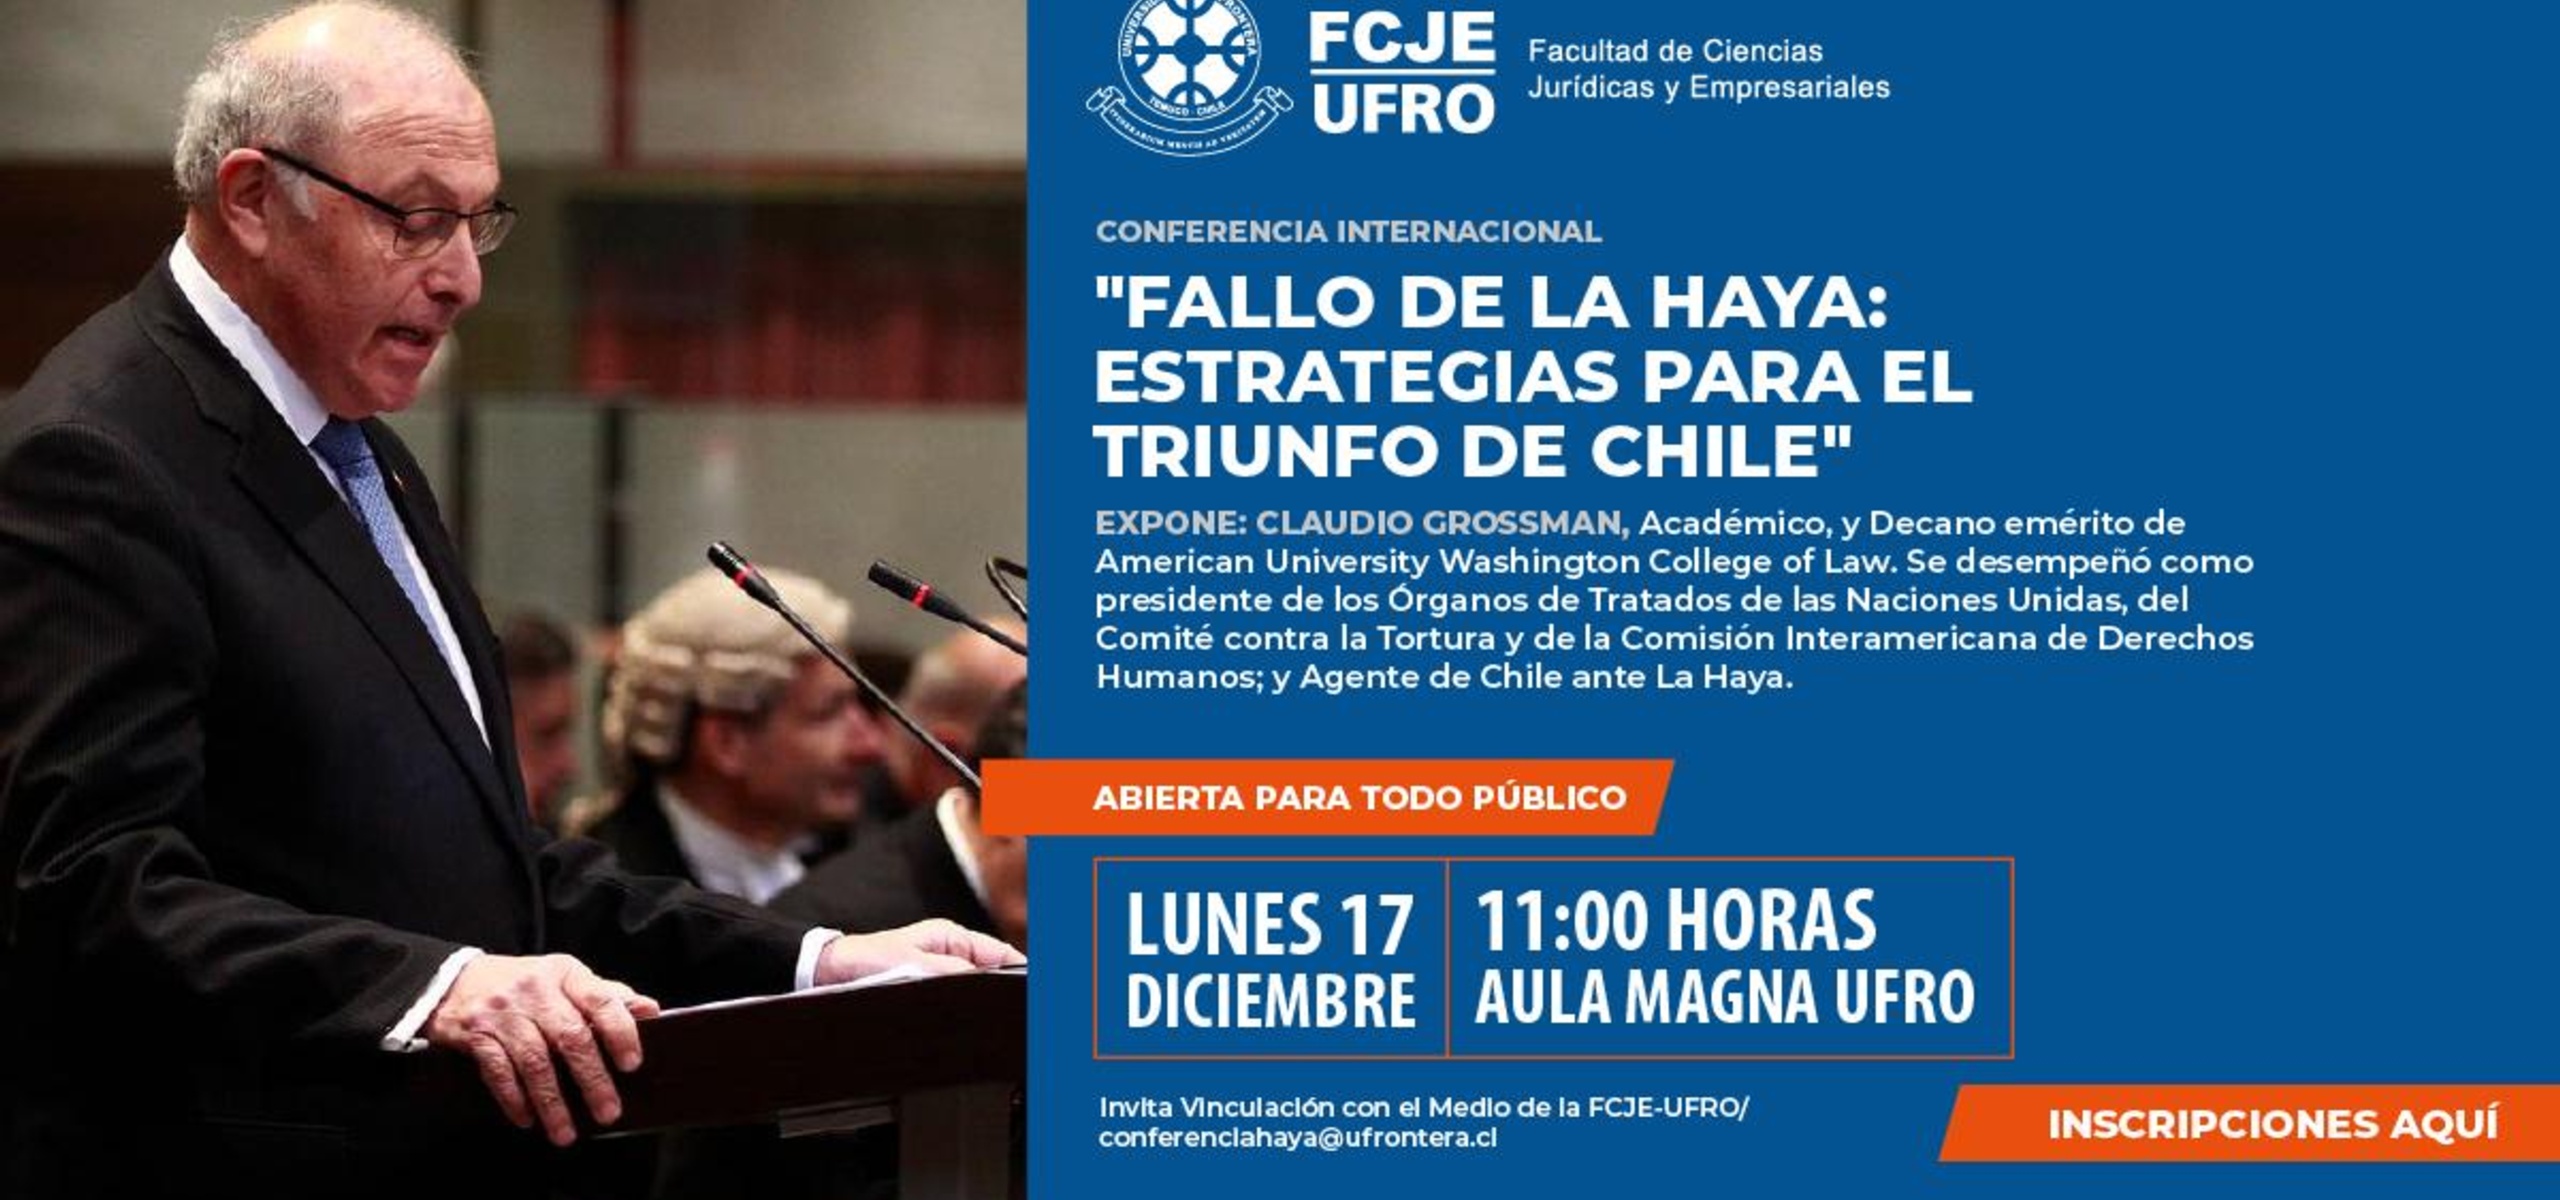 Dean Emeritus and Professor Claudio Grossman will speak at the Universidad de La Frontera in Temuco on Dec. 17.